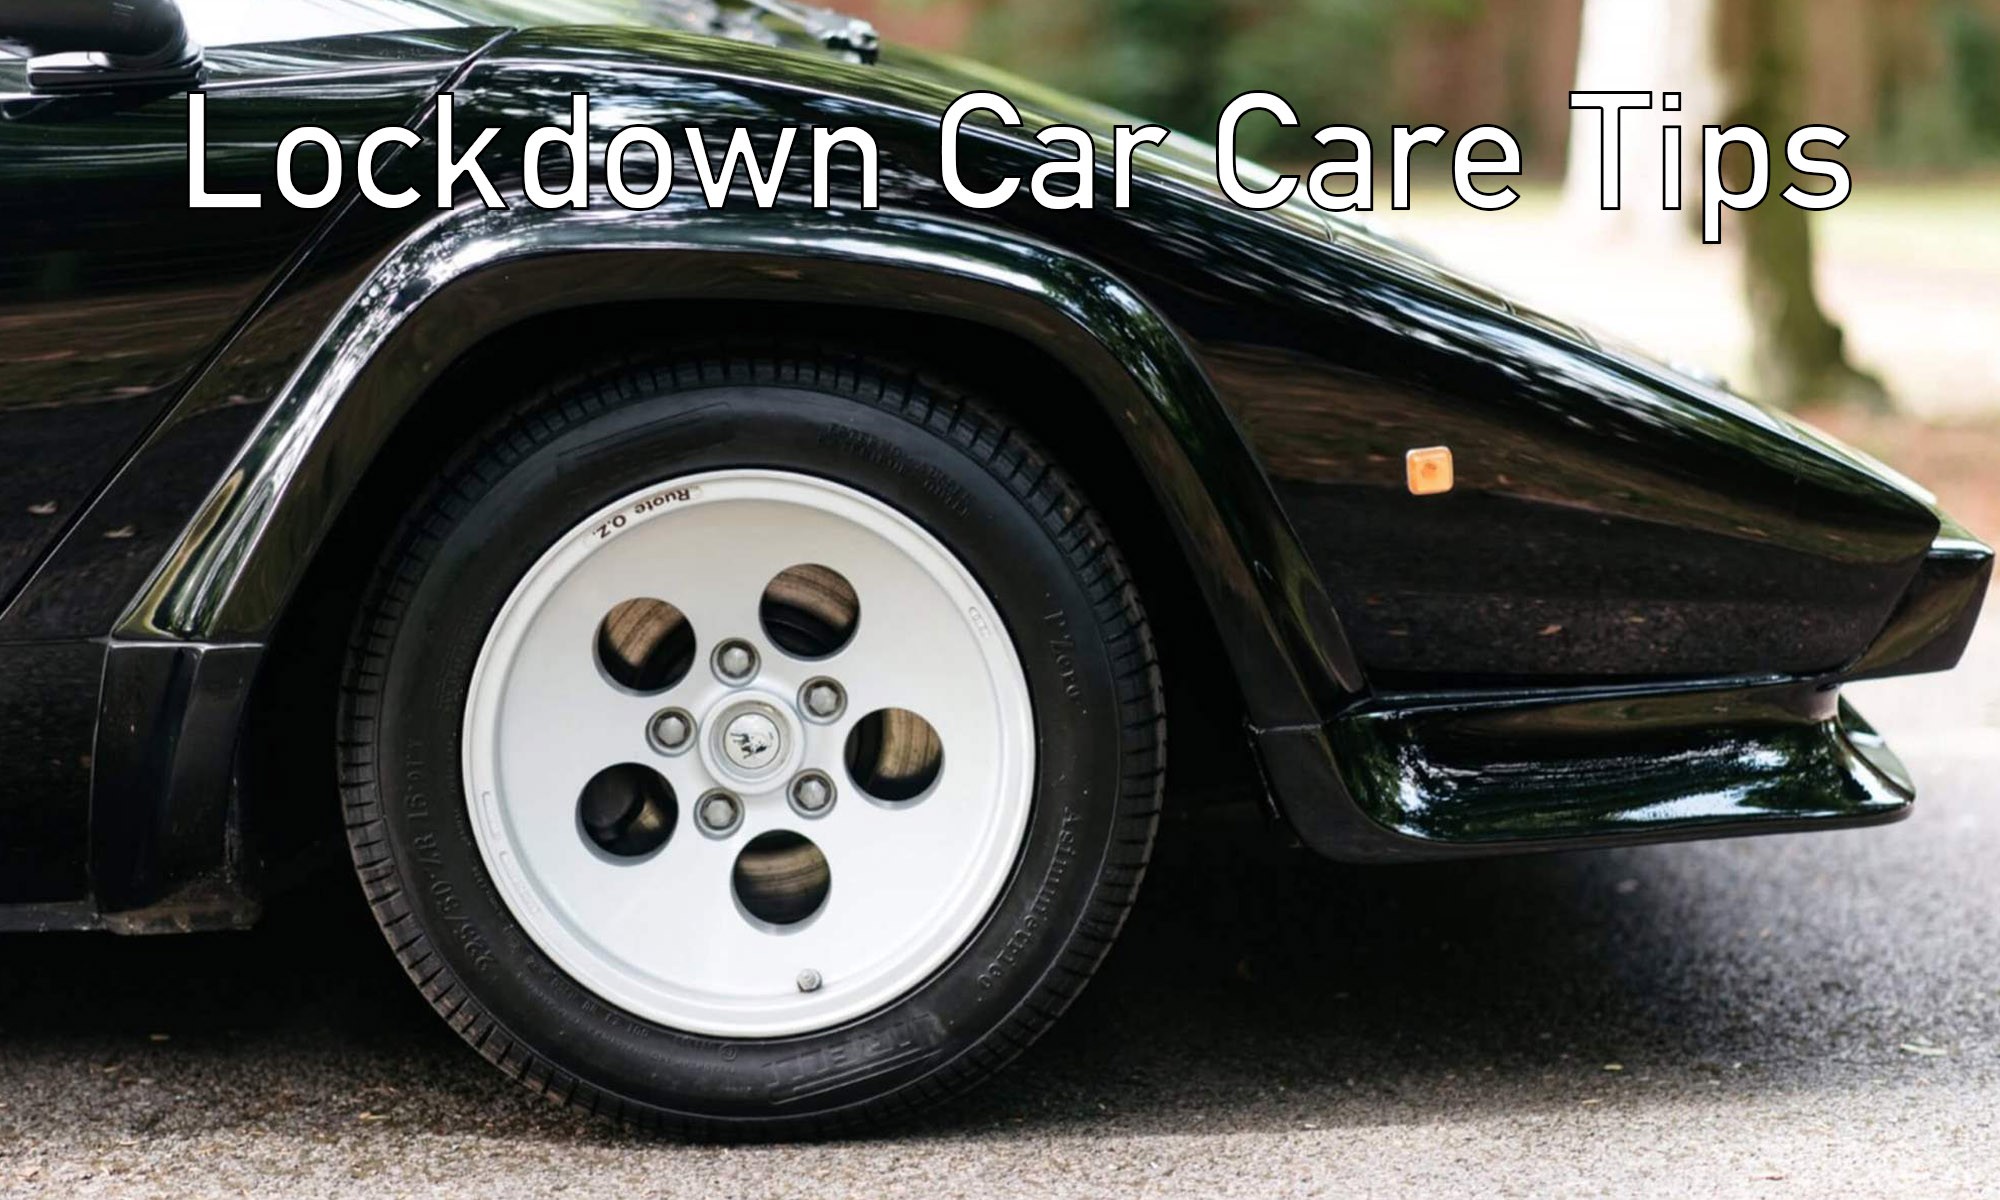 Lockdown Car Care Tips